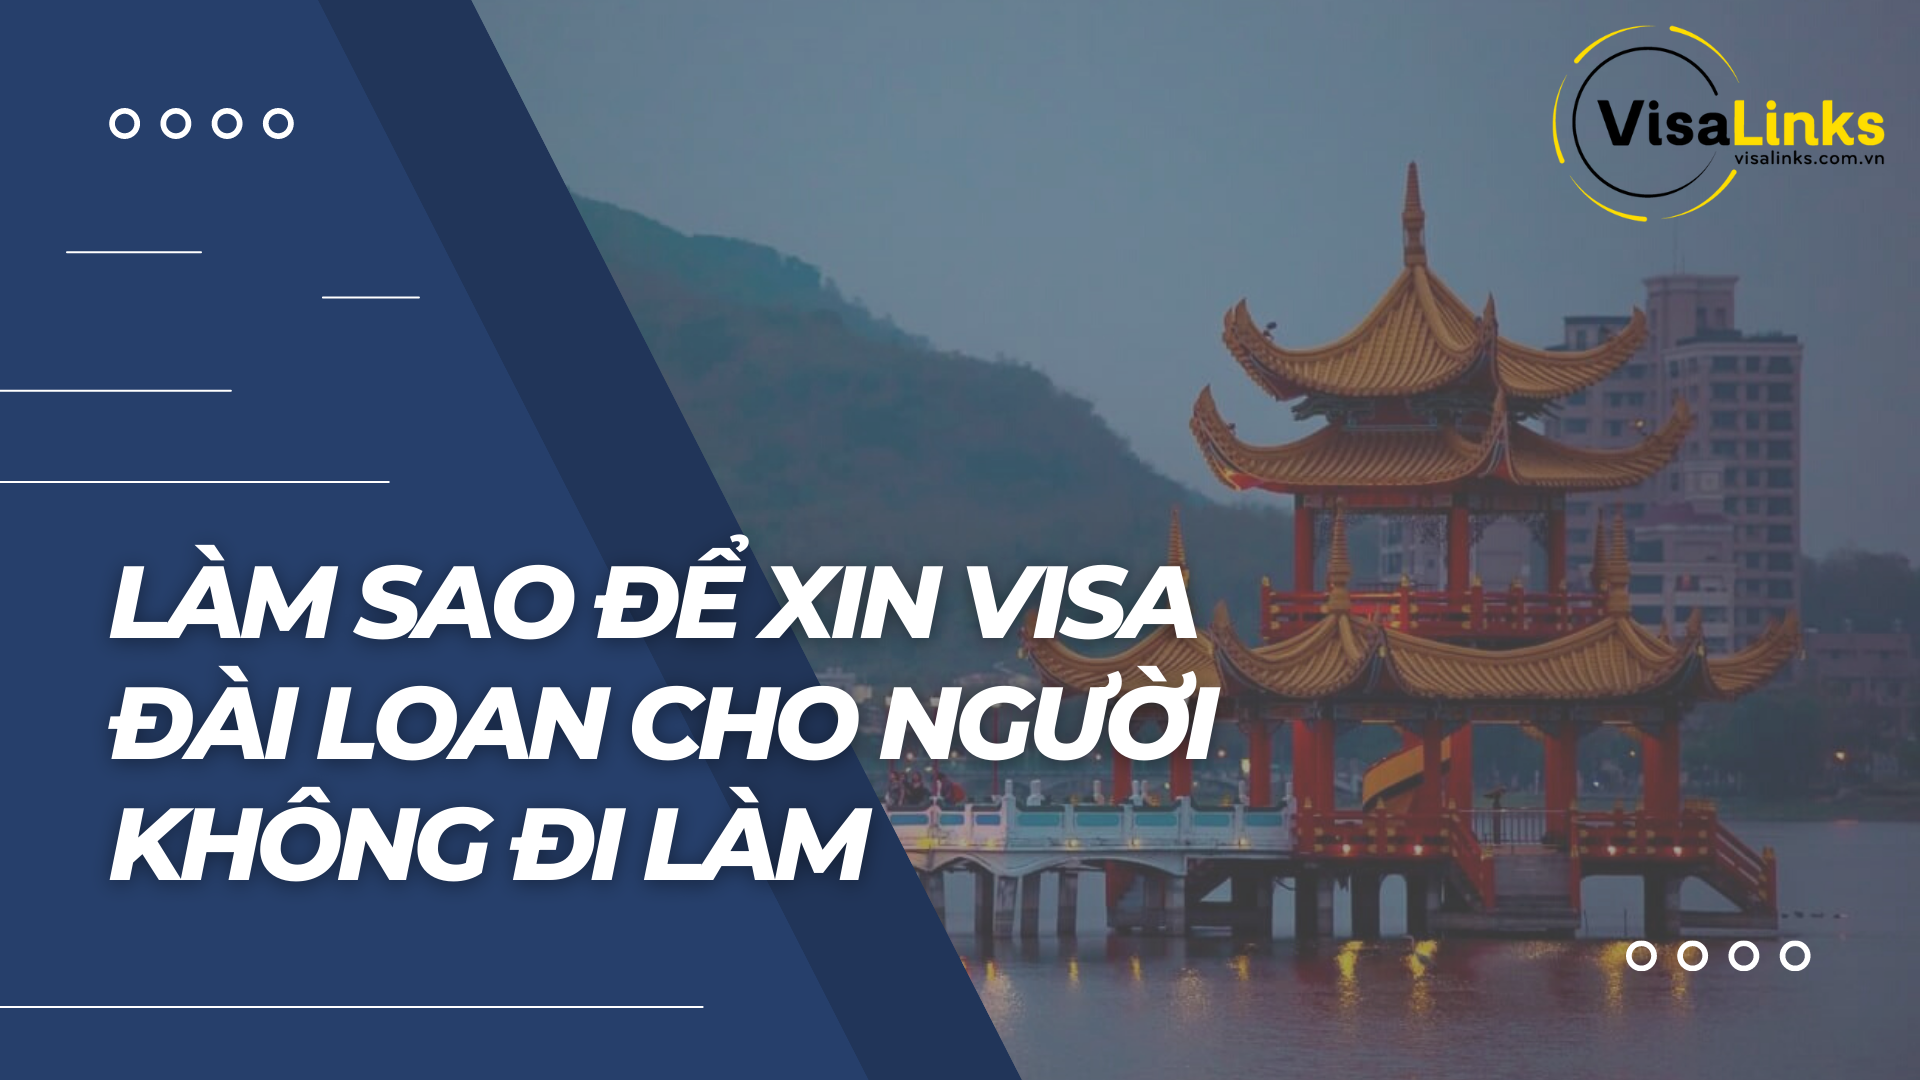 Visa Đài Loan cho người không đi làm